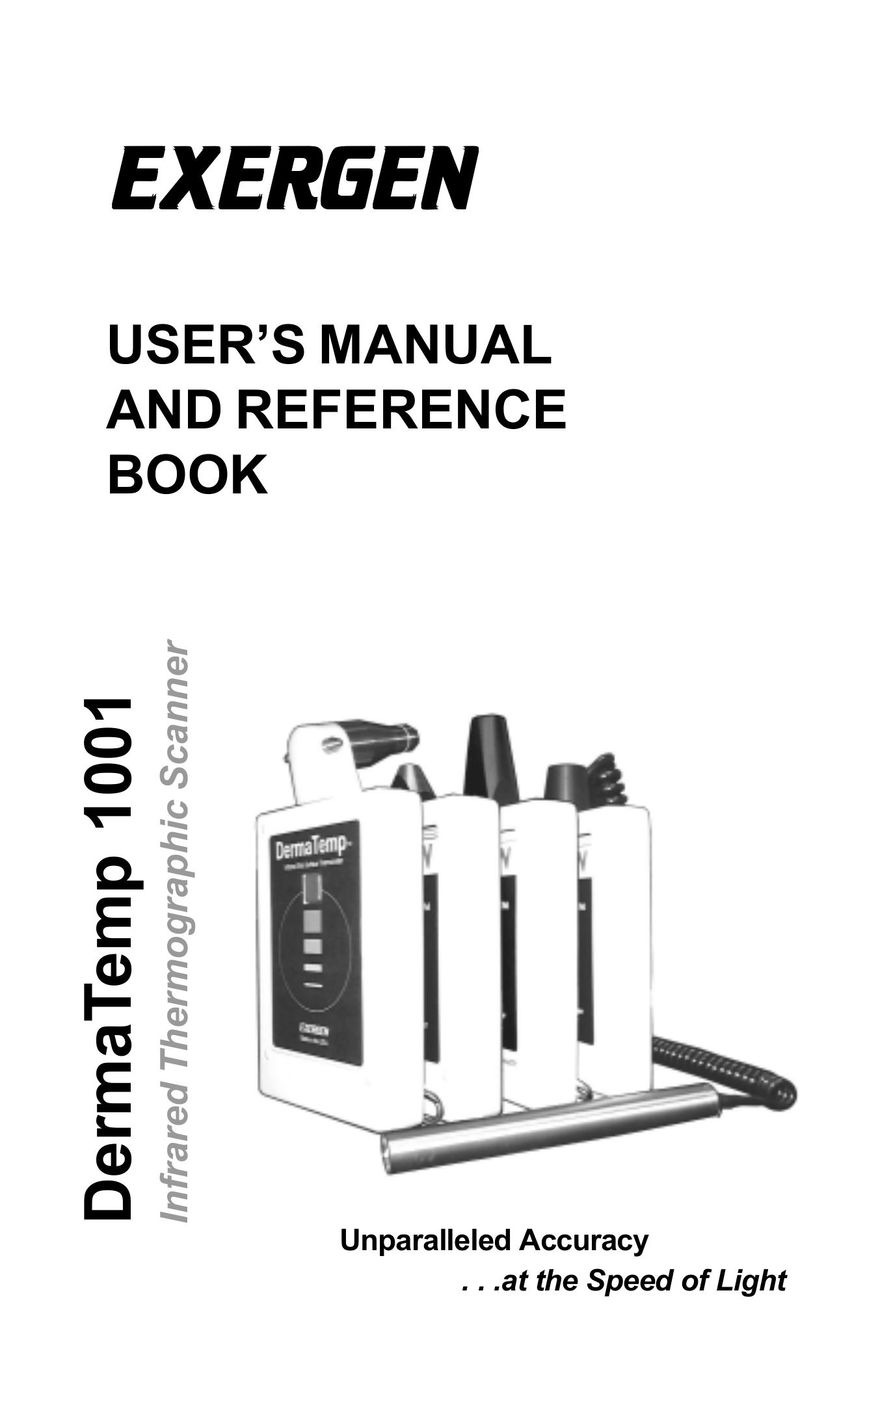 Exergen DT 1001-RS Scanner User Manual